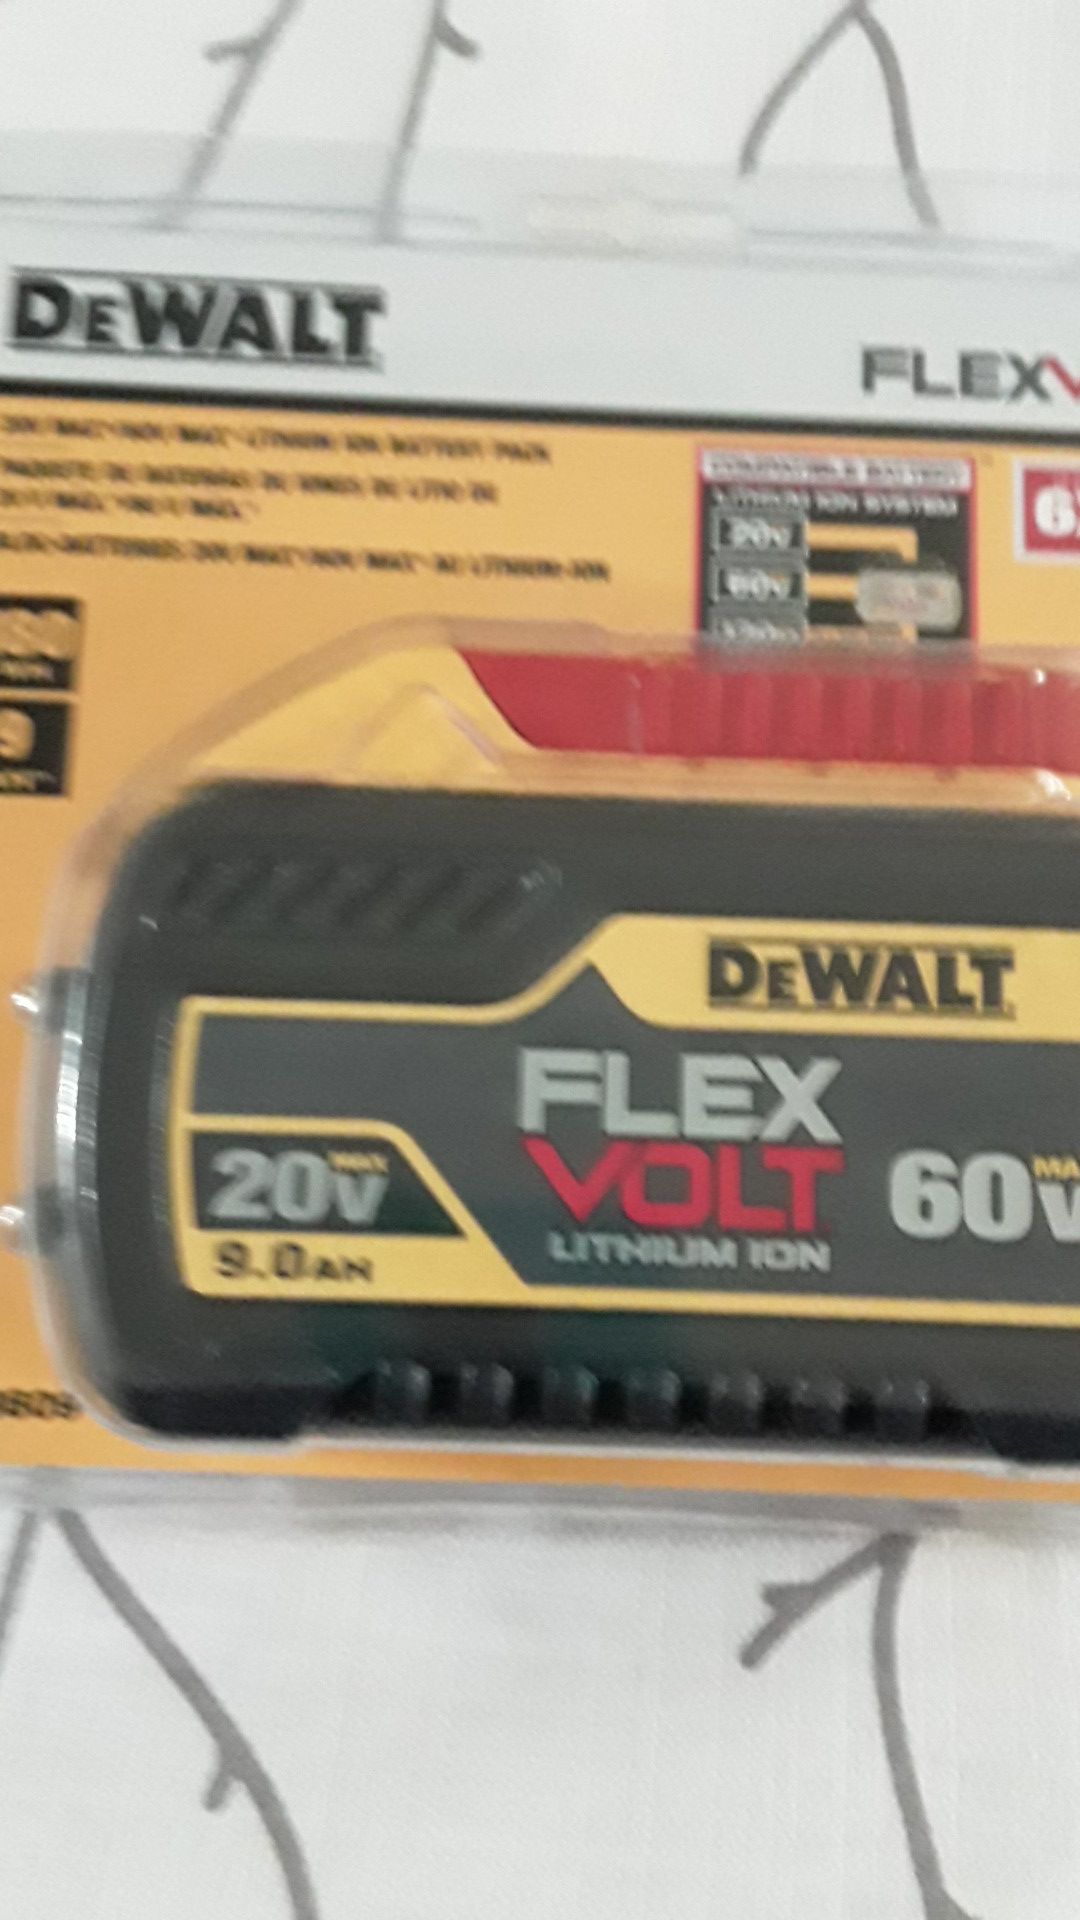 DeWalt flexvolt battery